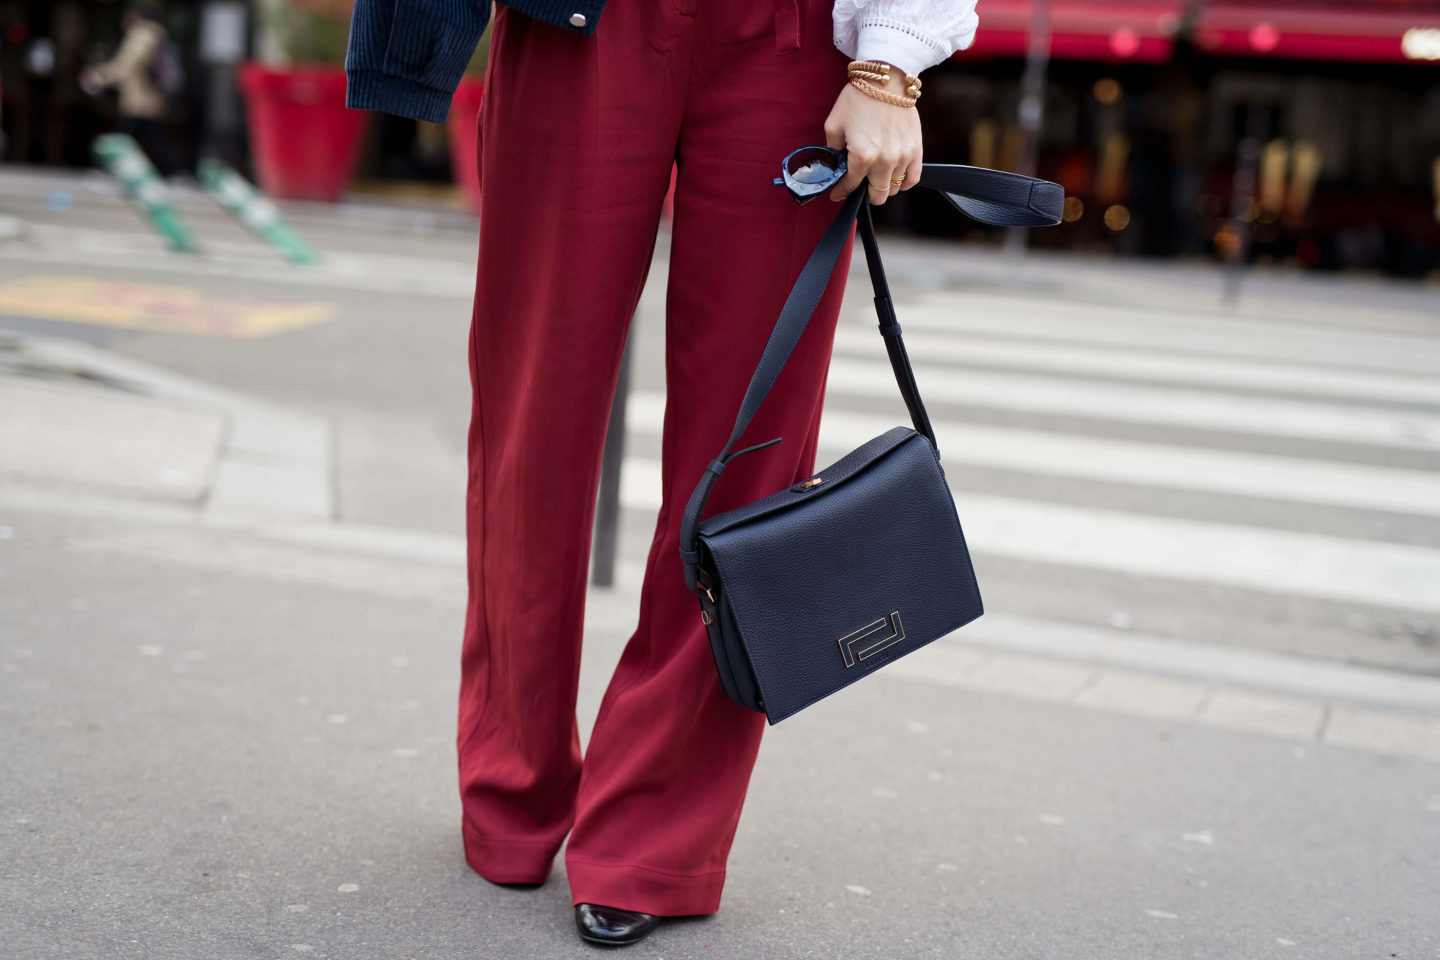 Blouse et pantalon rouge moulin rouge L'atelier d'al blog mode fashion lifestyle Paris streetstyle